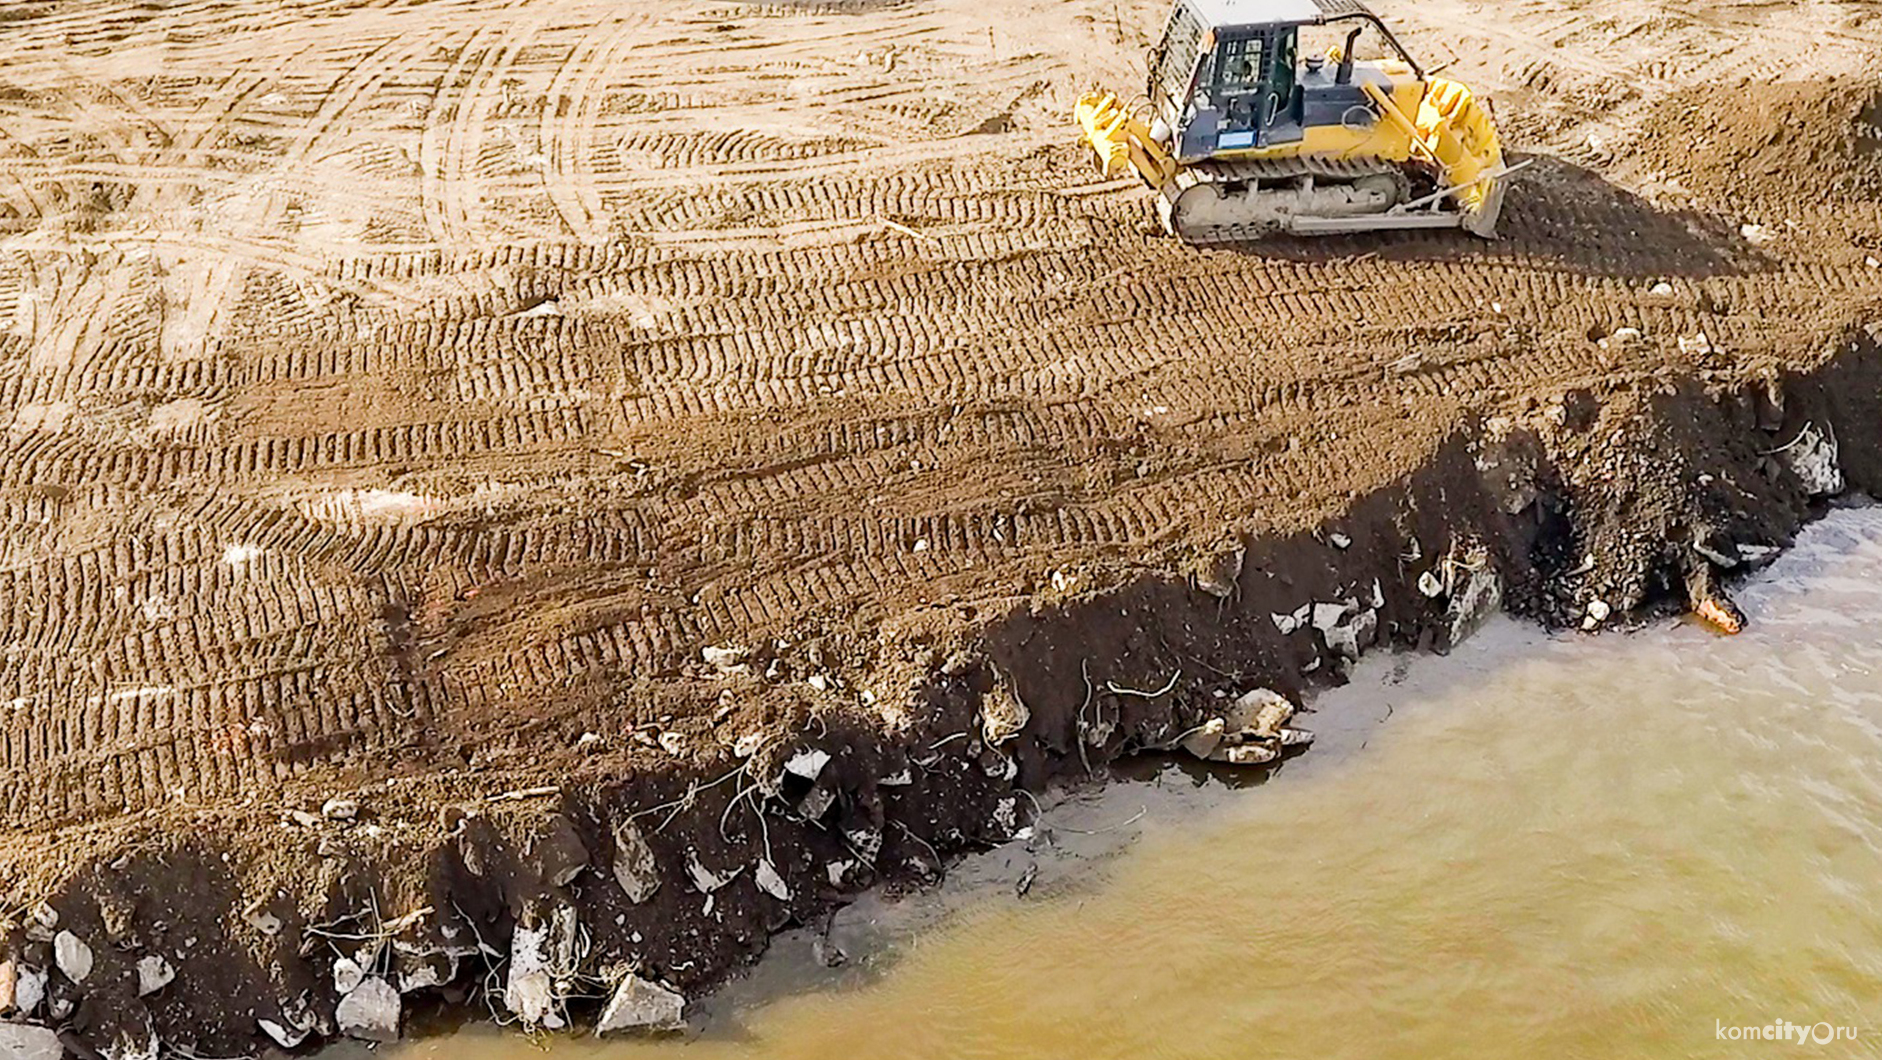 Свал строительного мусора в Амур объяснили установкой временного причального сооружения, берег в дальнейшем обещали почистить